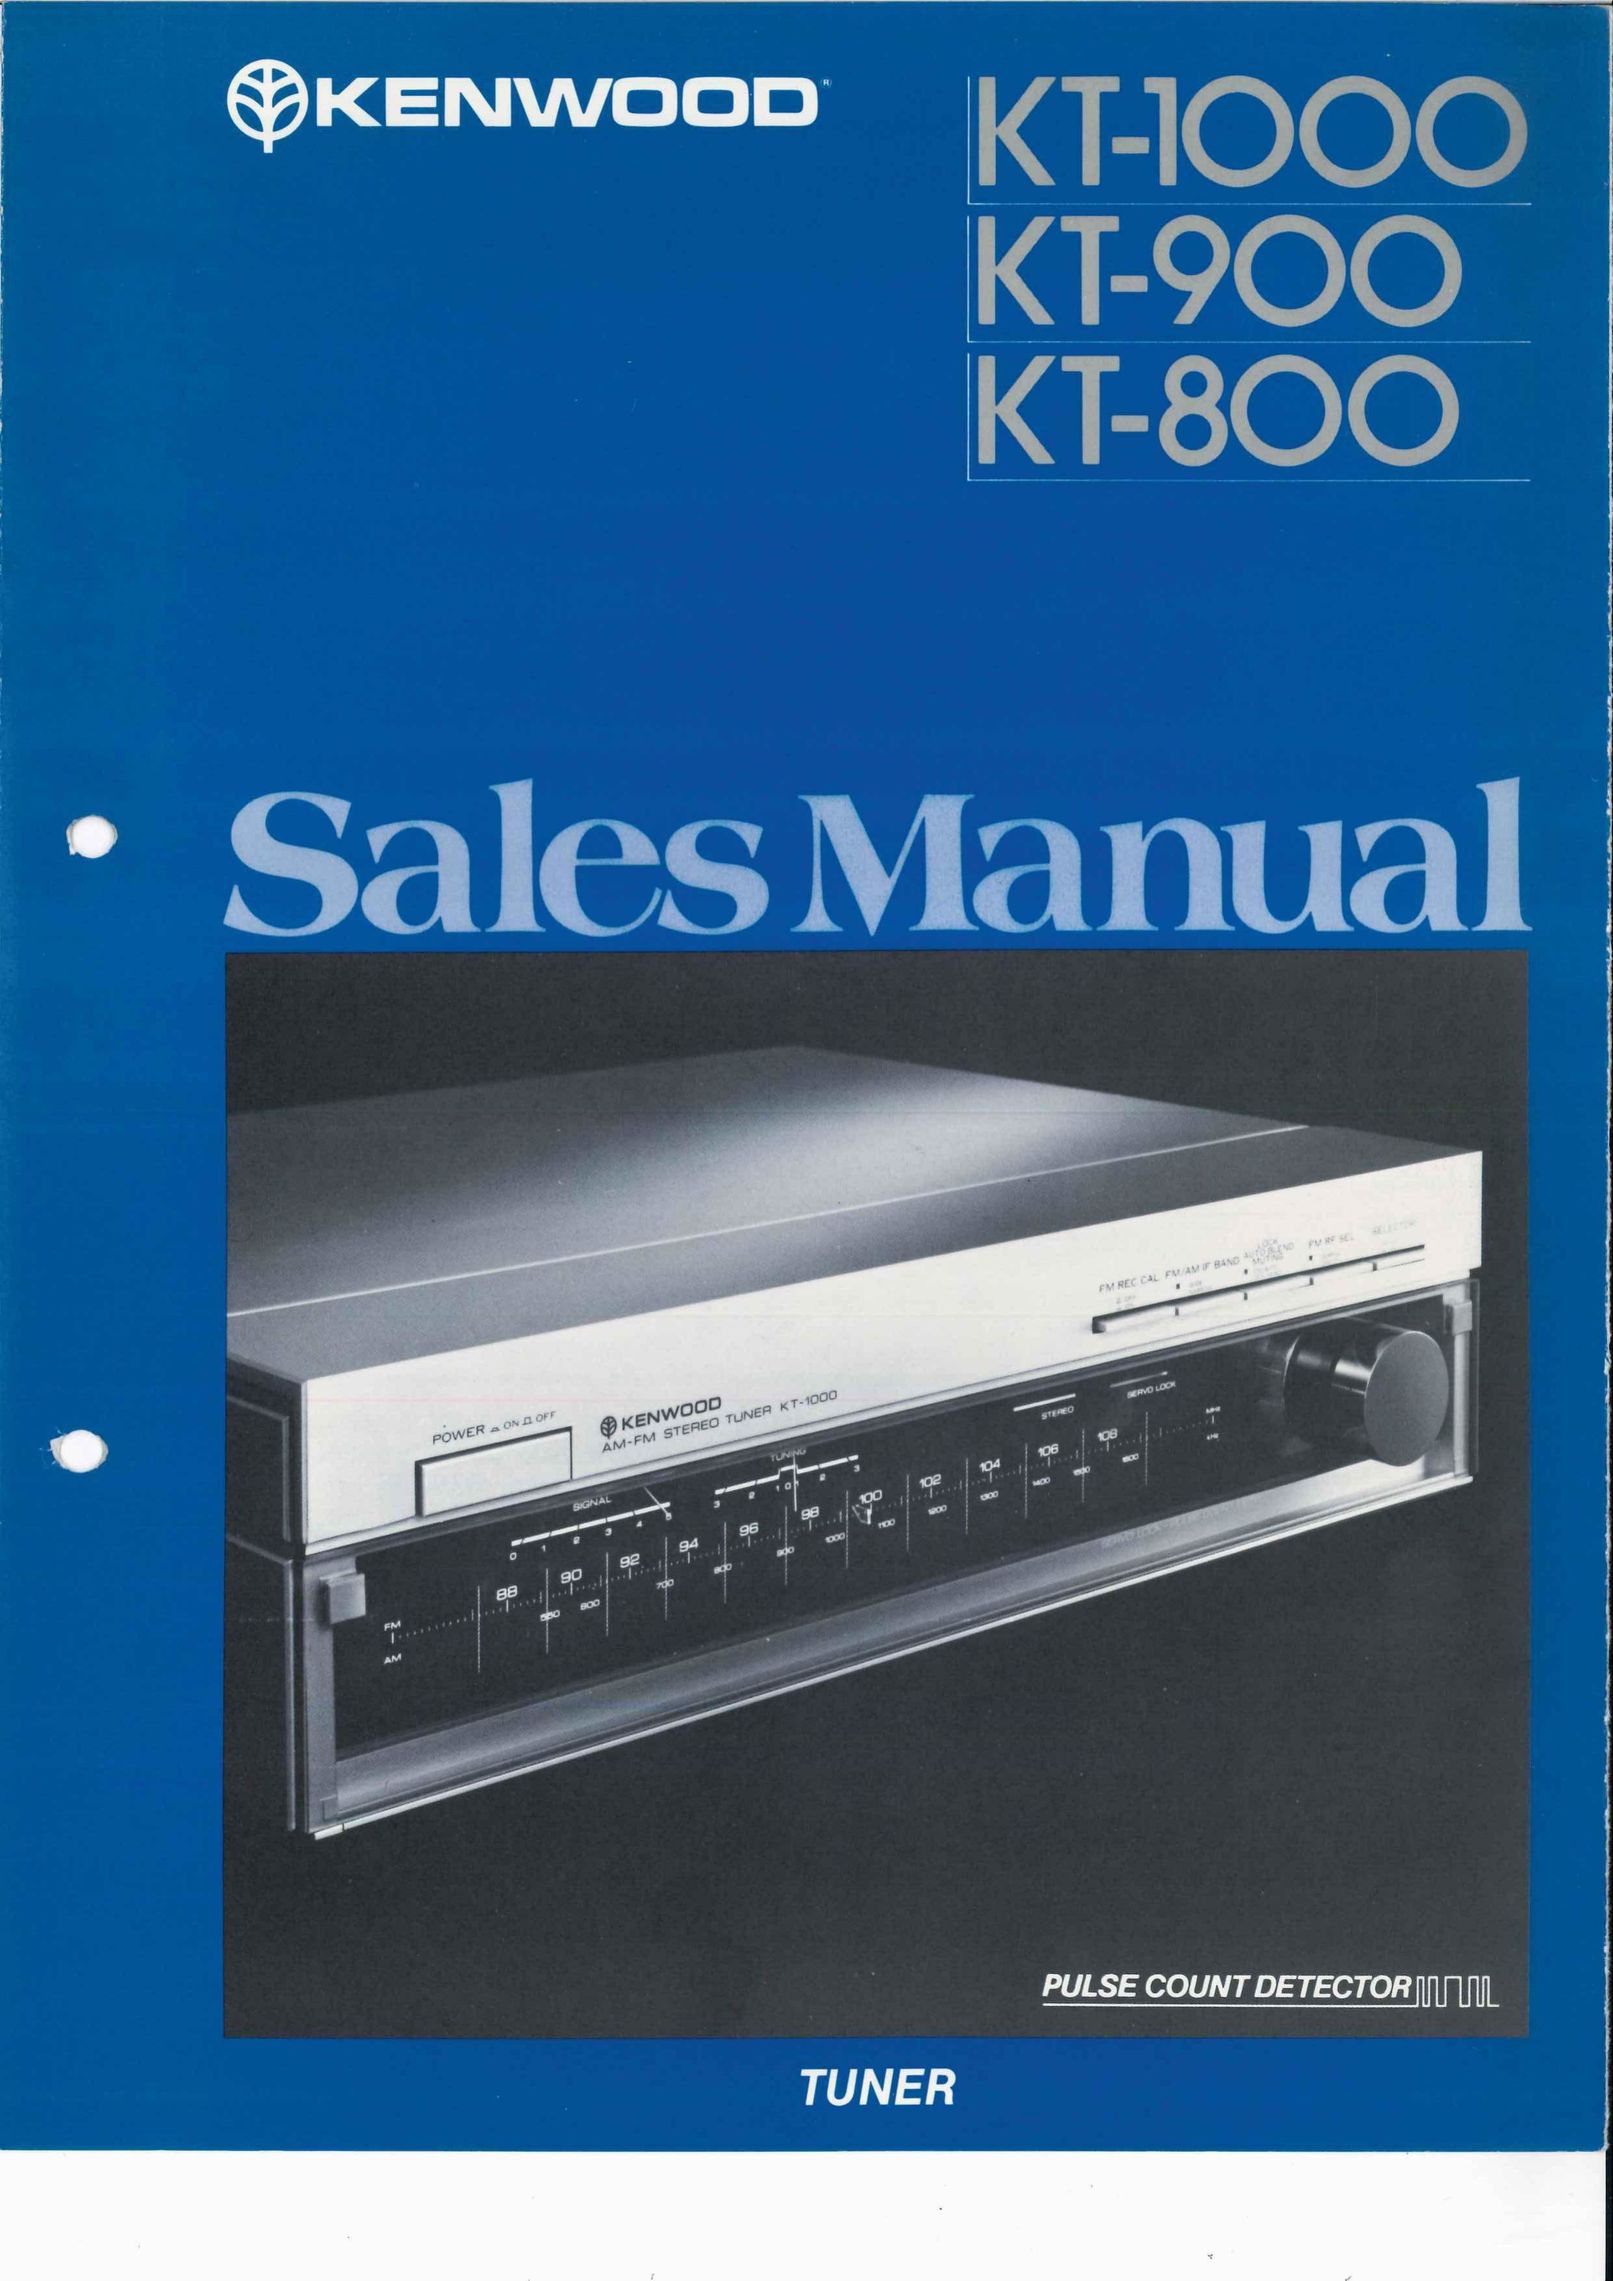 Kenwood KT-1000 TV Receiver User Manual